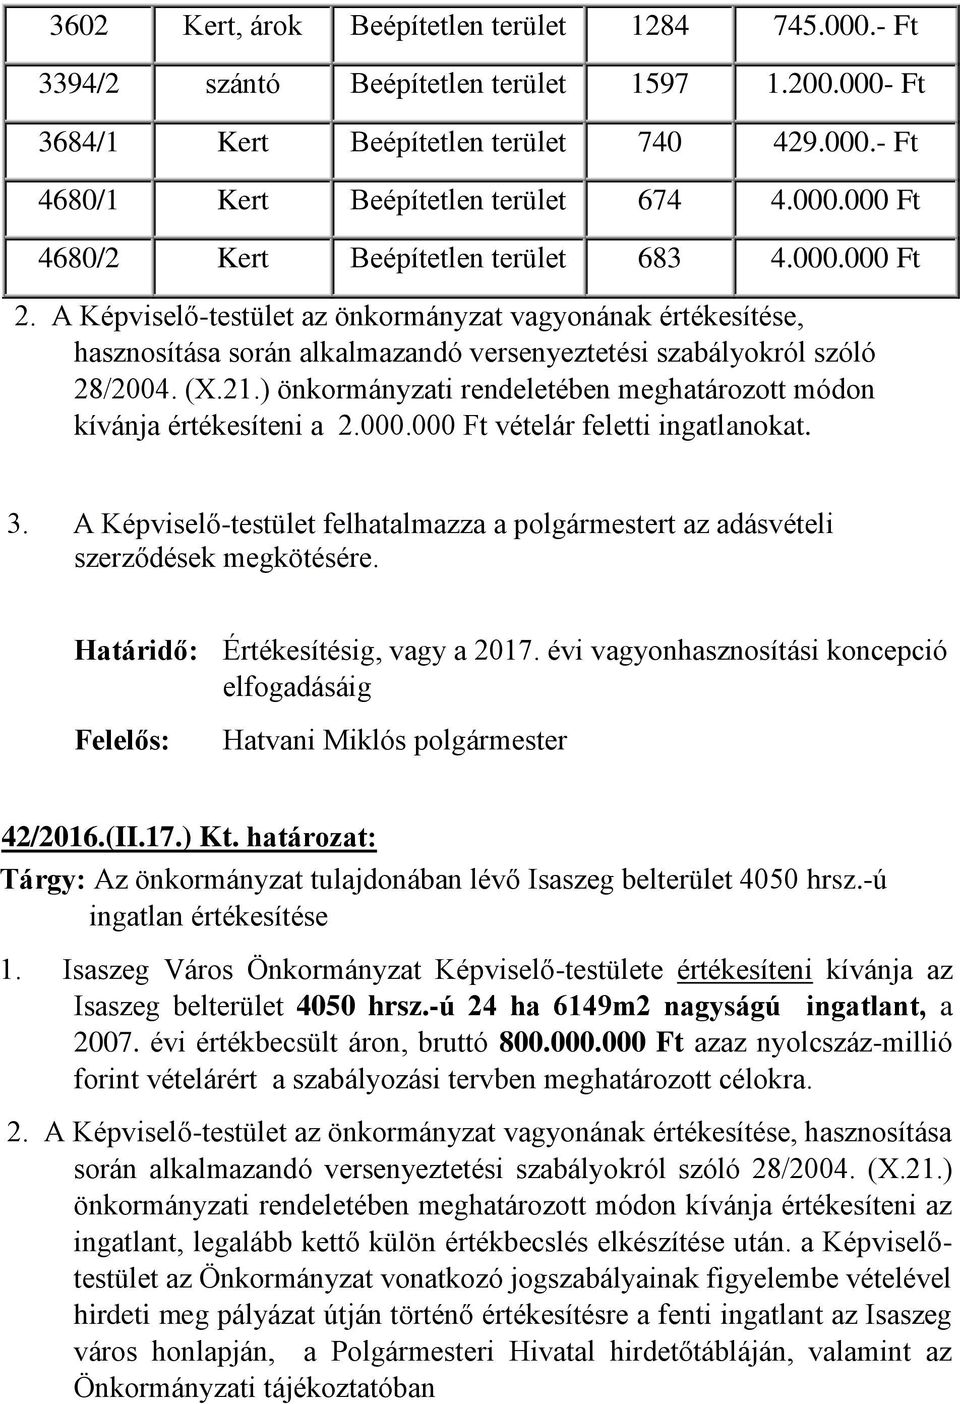 A Képviselő-testület felhatalmazza a polgármestert az adásvételi szerződések megkötésére. 42/2016.(II.17.) Kt. határozat: Tárgy: Az önkormányzat tulajdonában lévő Isaszeg bel 4050 hrsz.